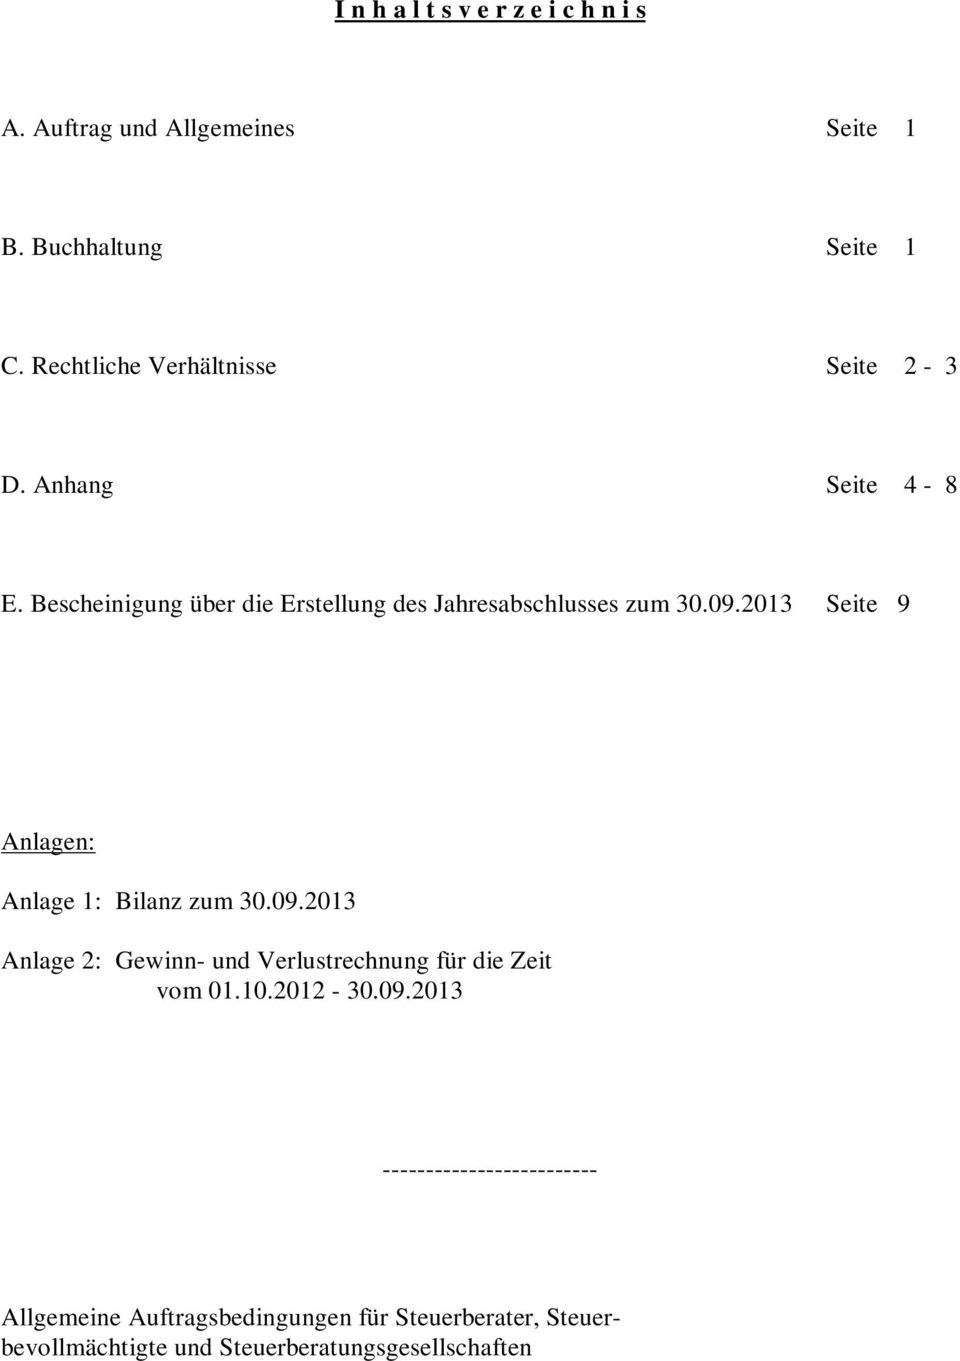 09.2013 Seite 9 Anlagen: Anlage 1: Bilanz zum 30.09.2013 Anlage 2: Gewinn- und Verlustrechnung für die Zeit vom 01.10.